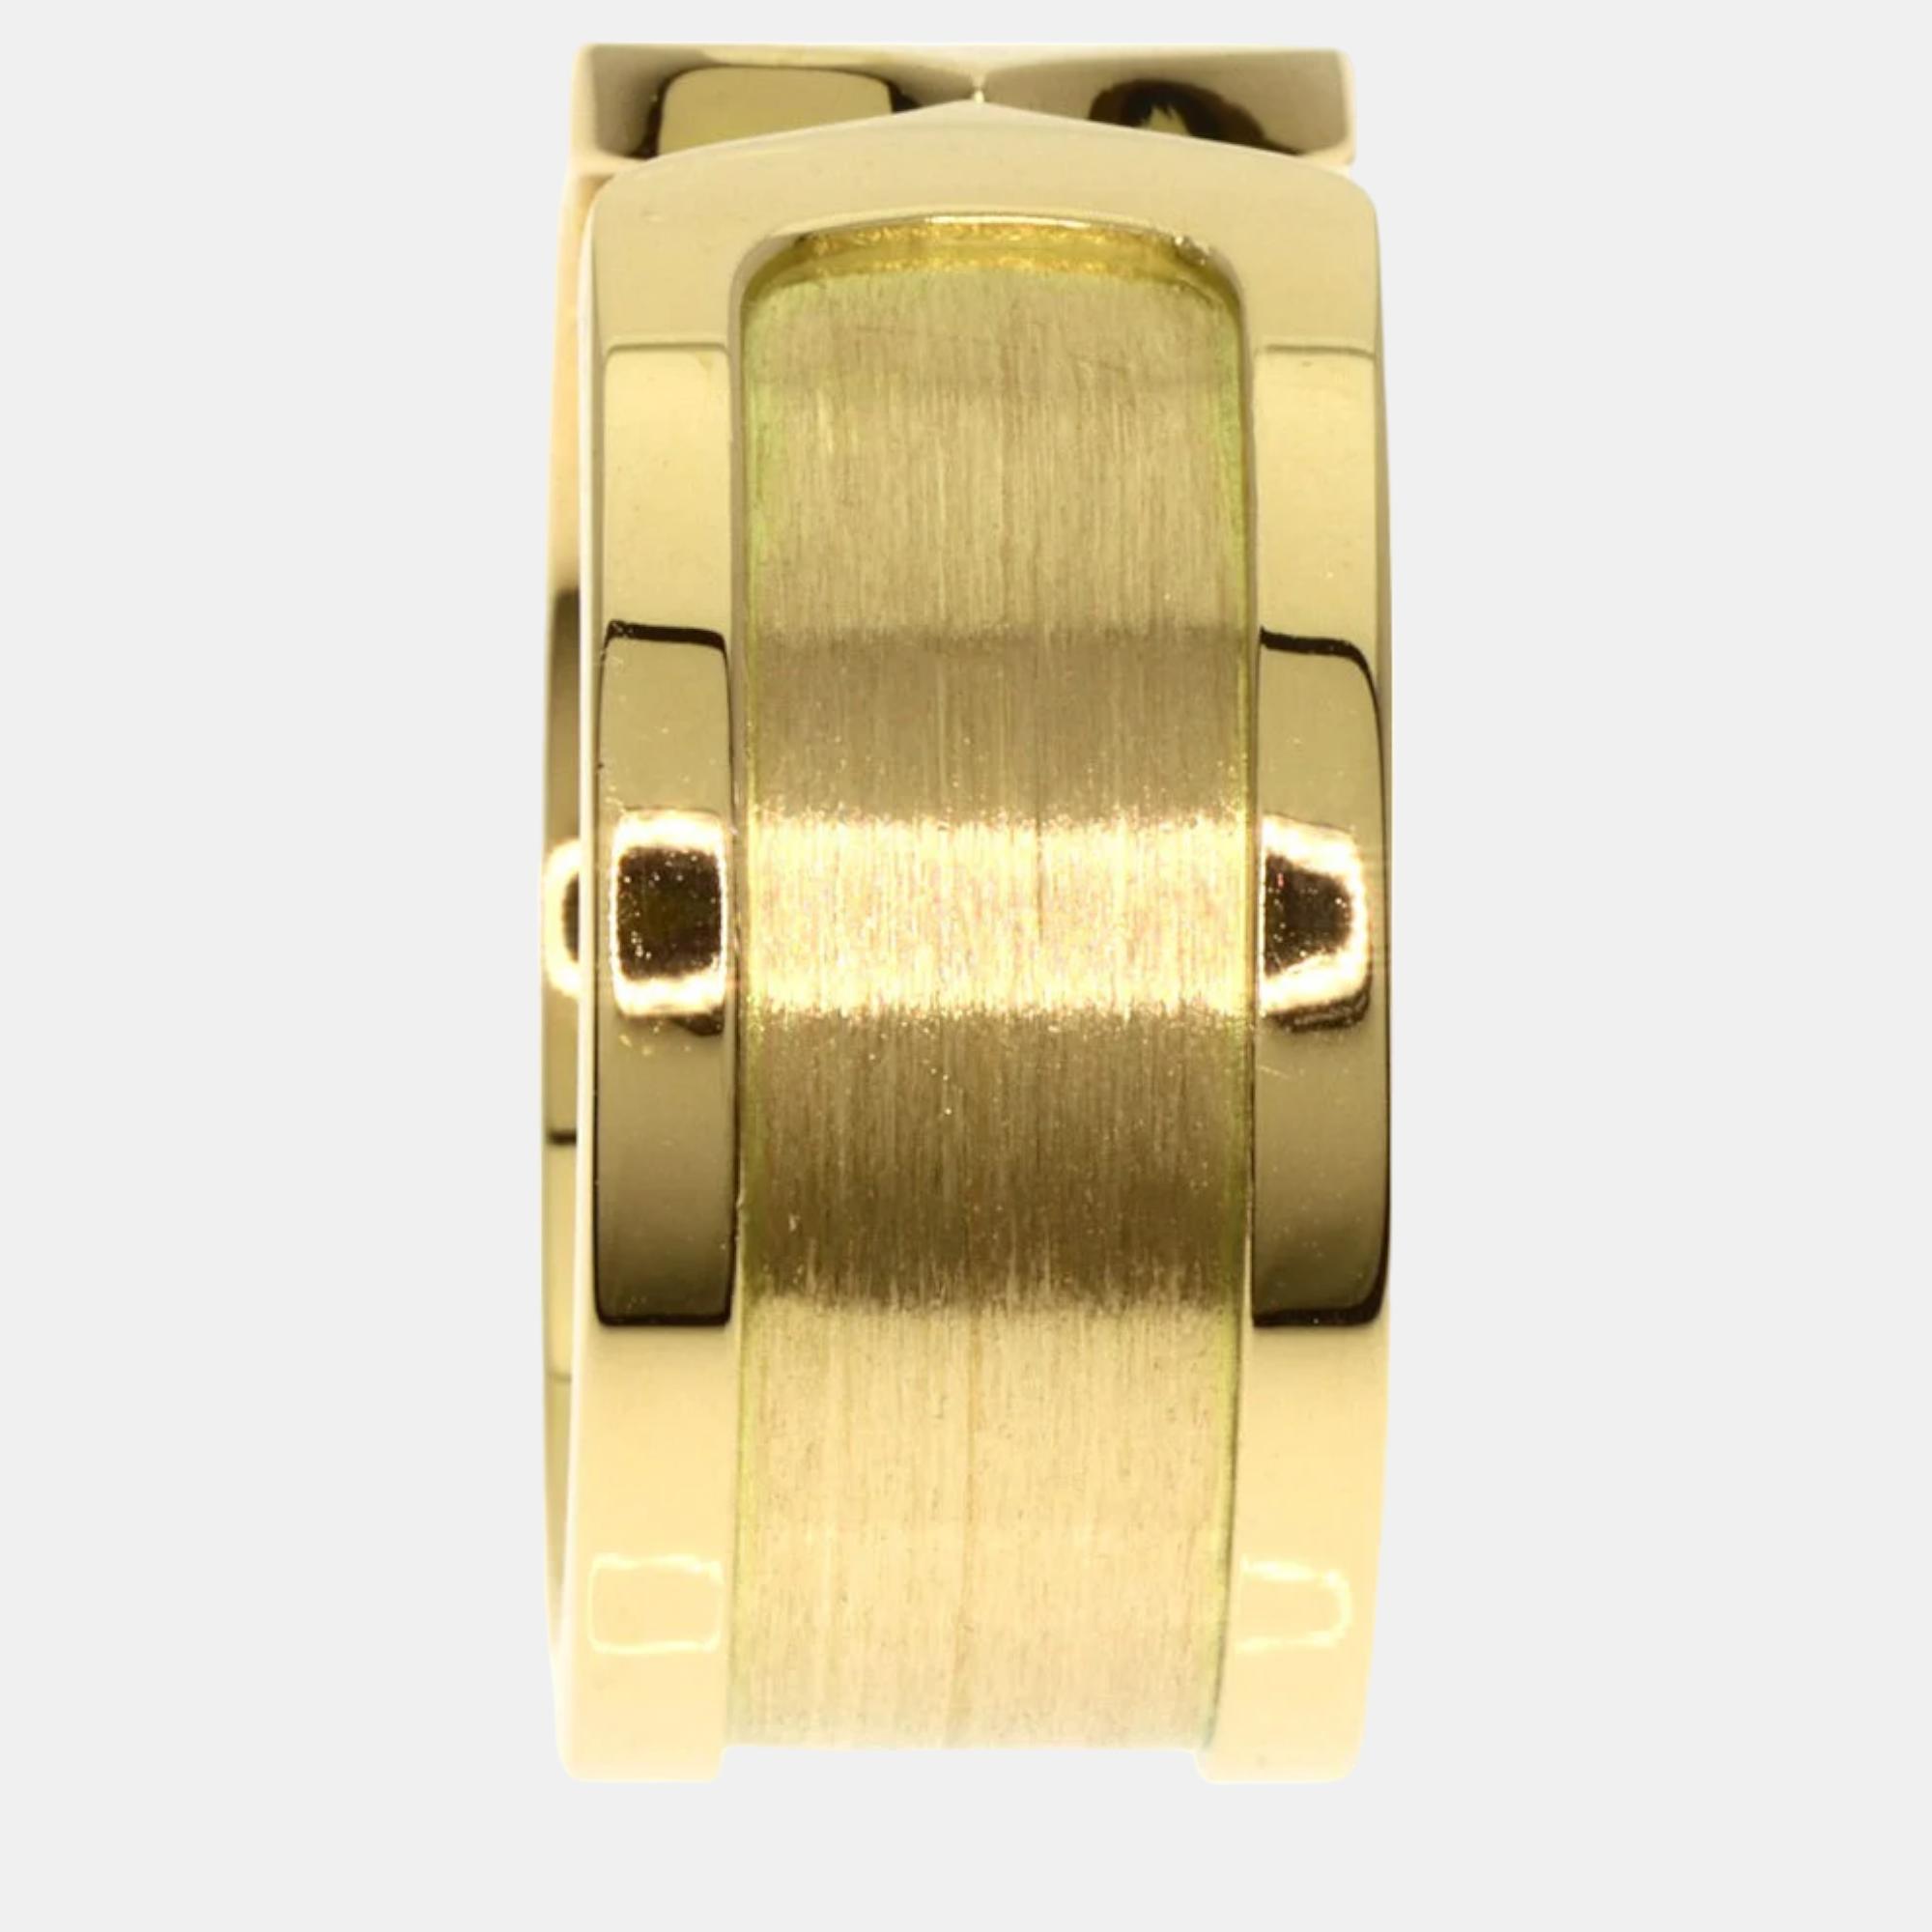 Cartier Double C Yellow Gold 18K Ring EU 56